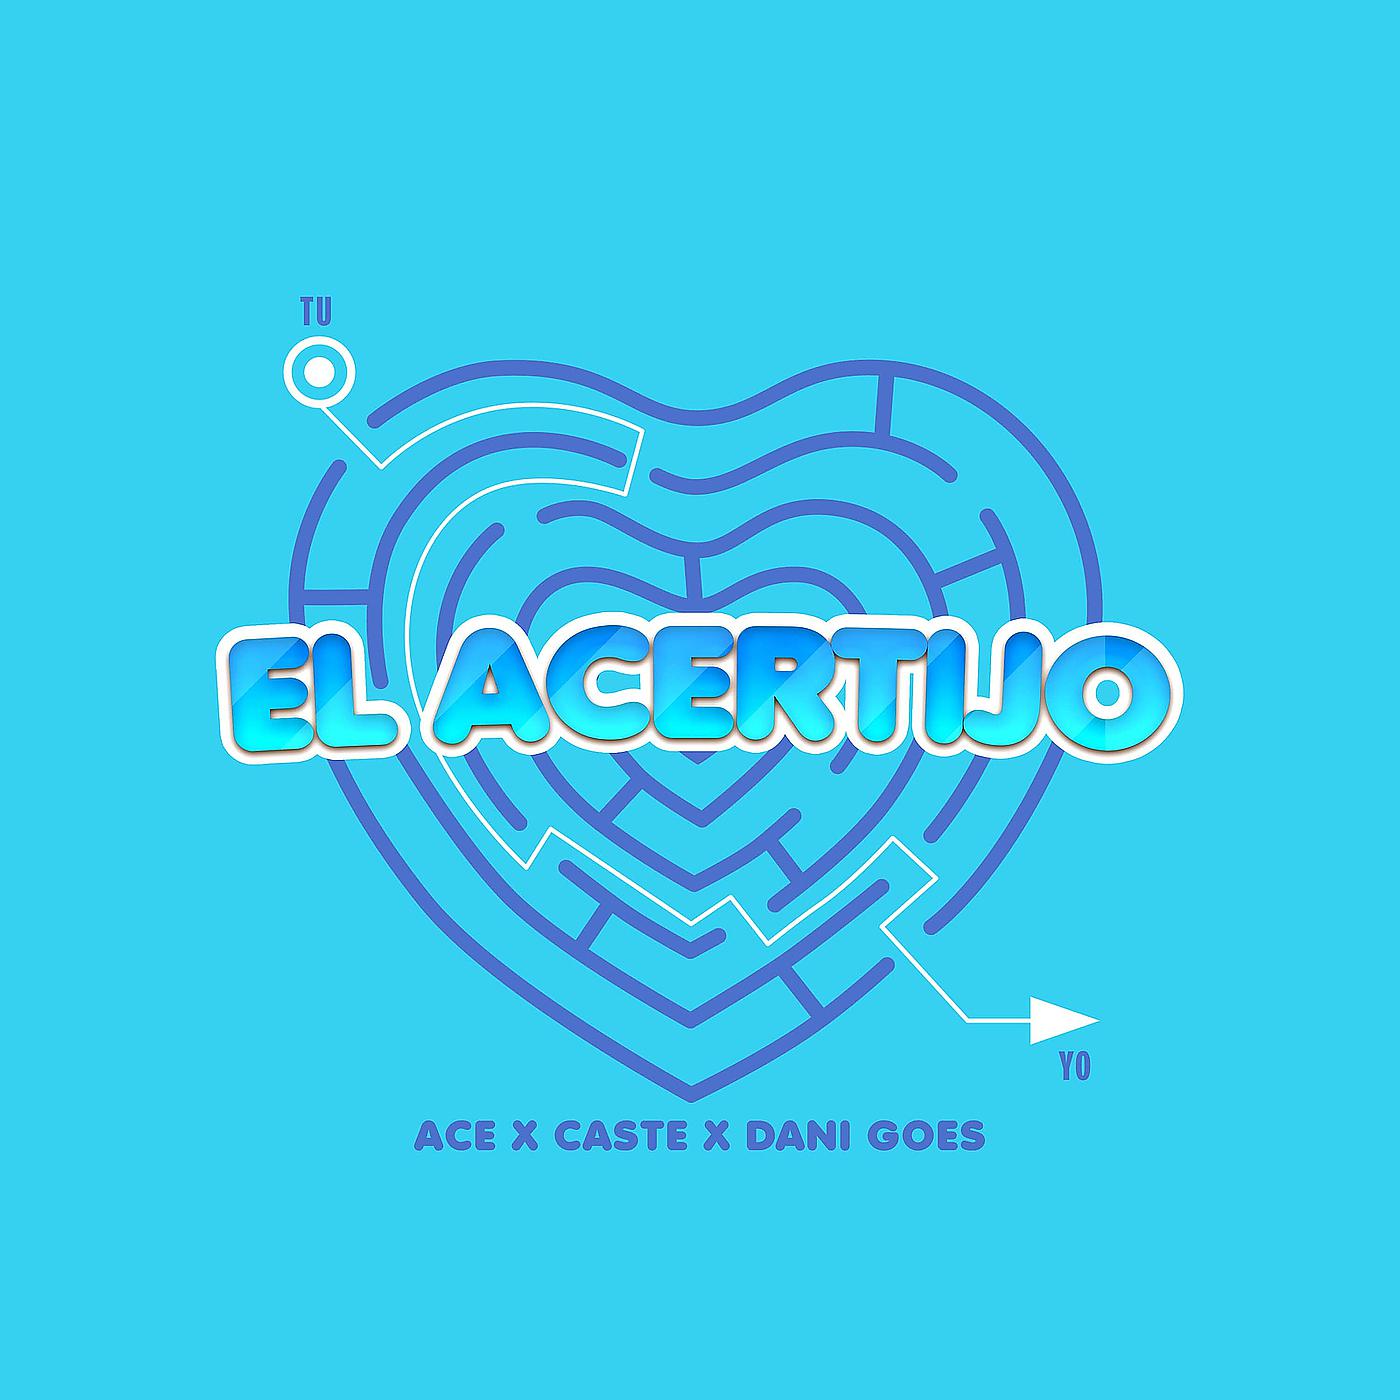 Постер альбома El Acertijo